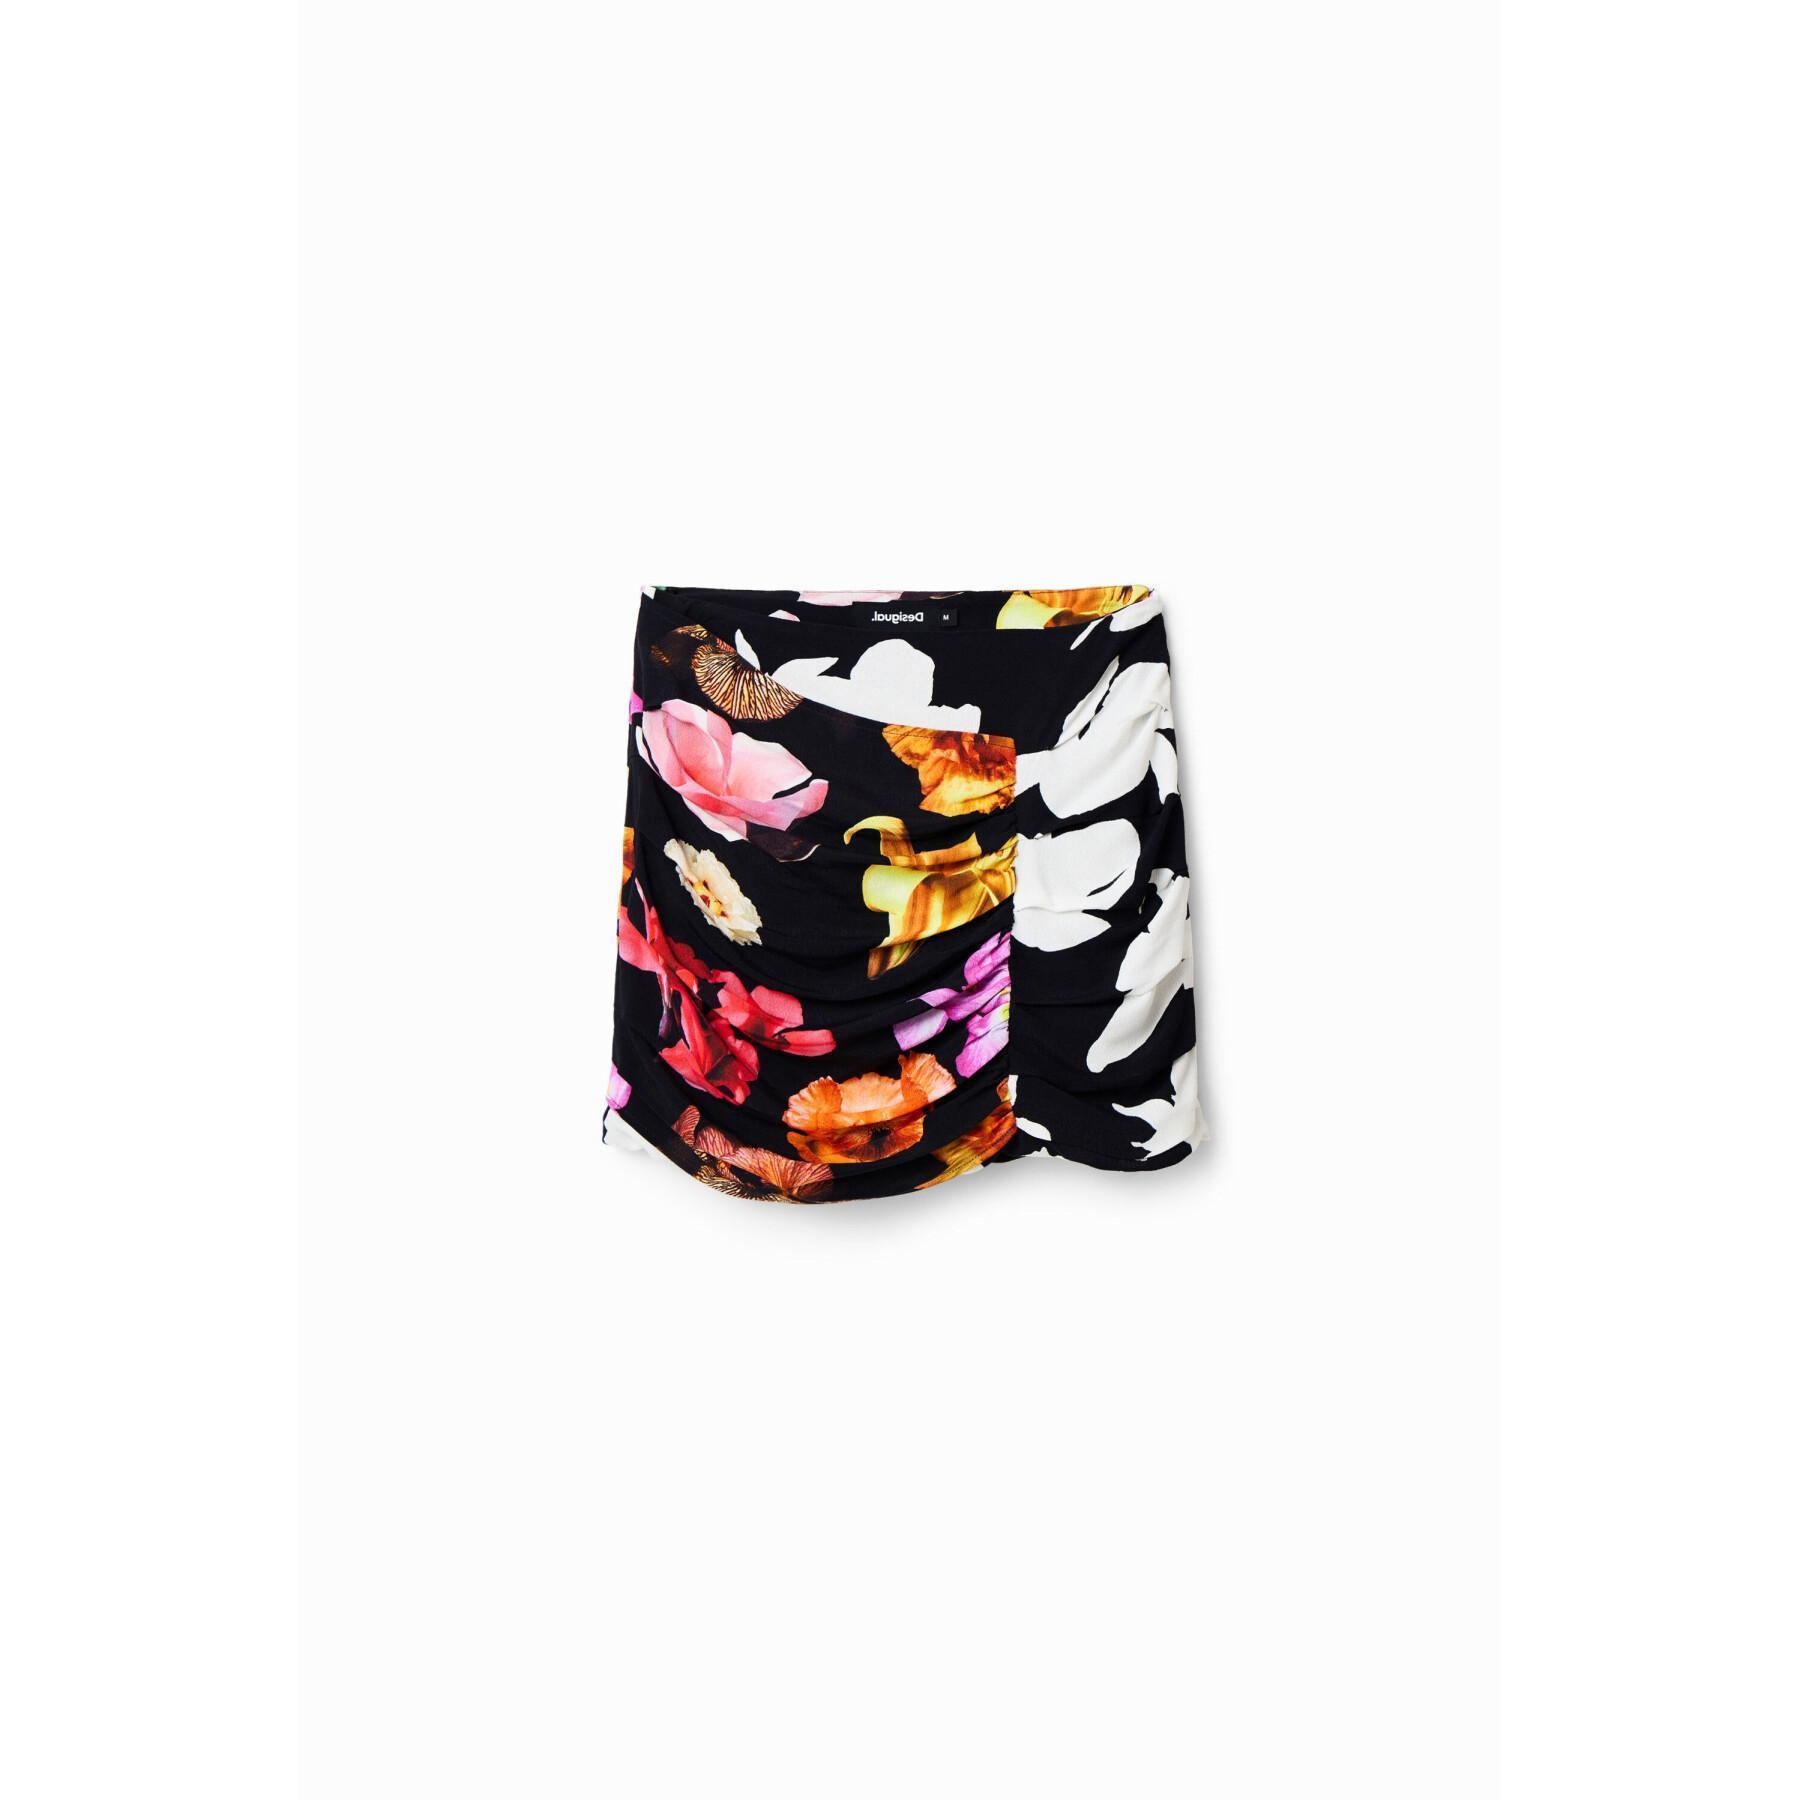 Damska drapowana spódnica mini w kwiaty Desigual